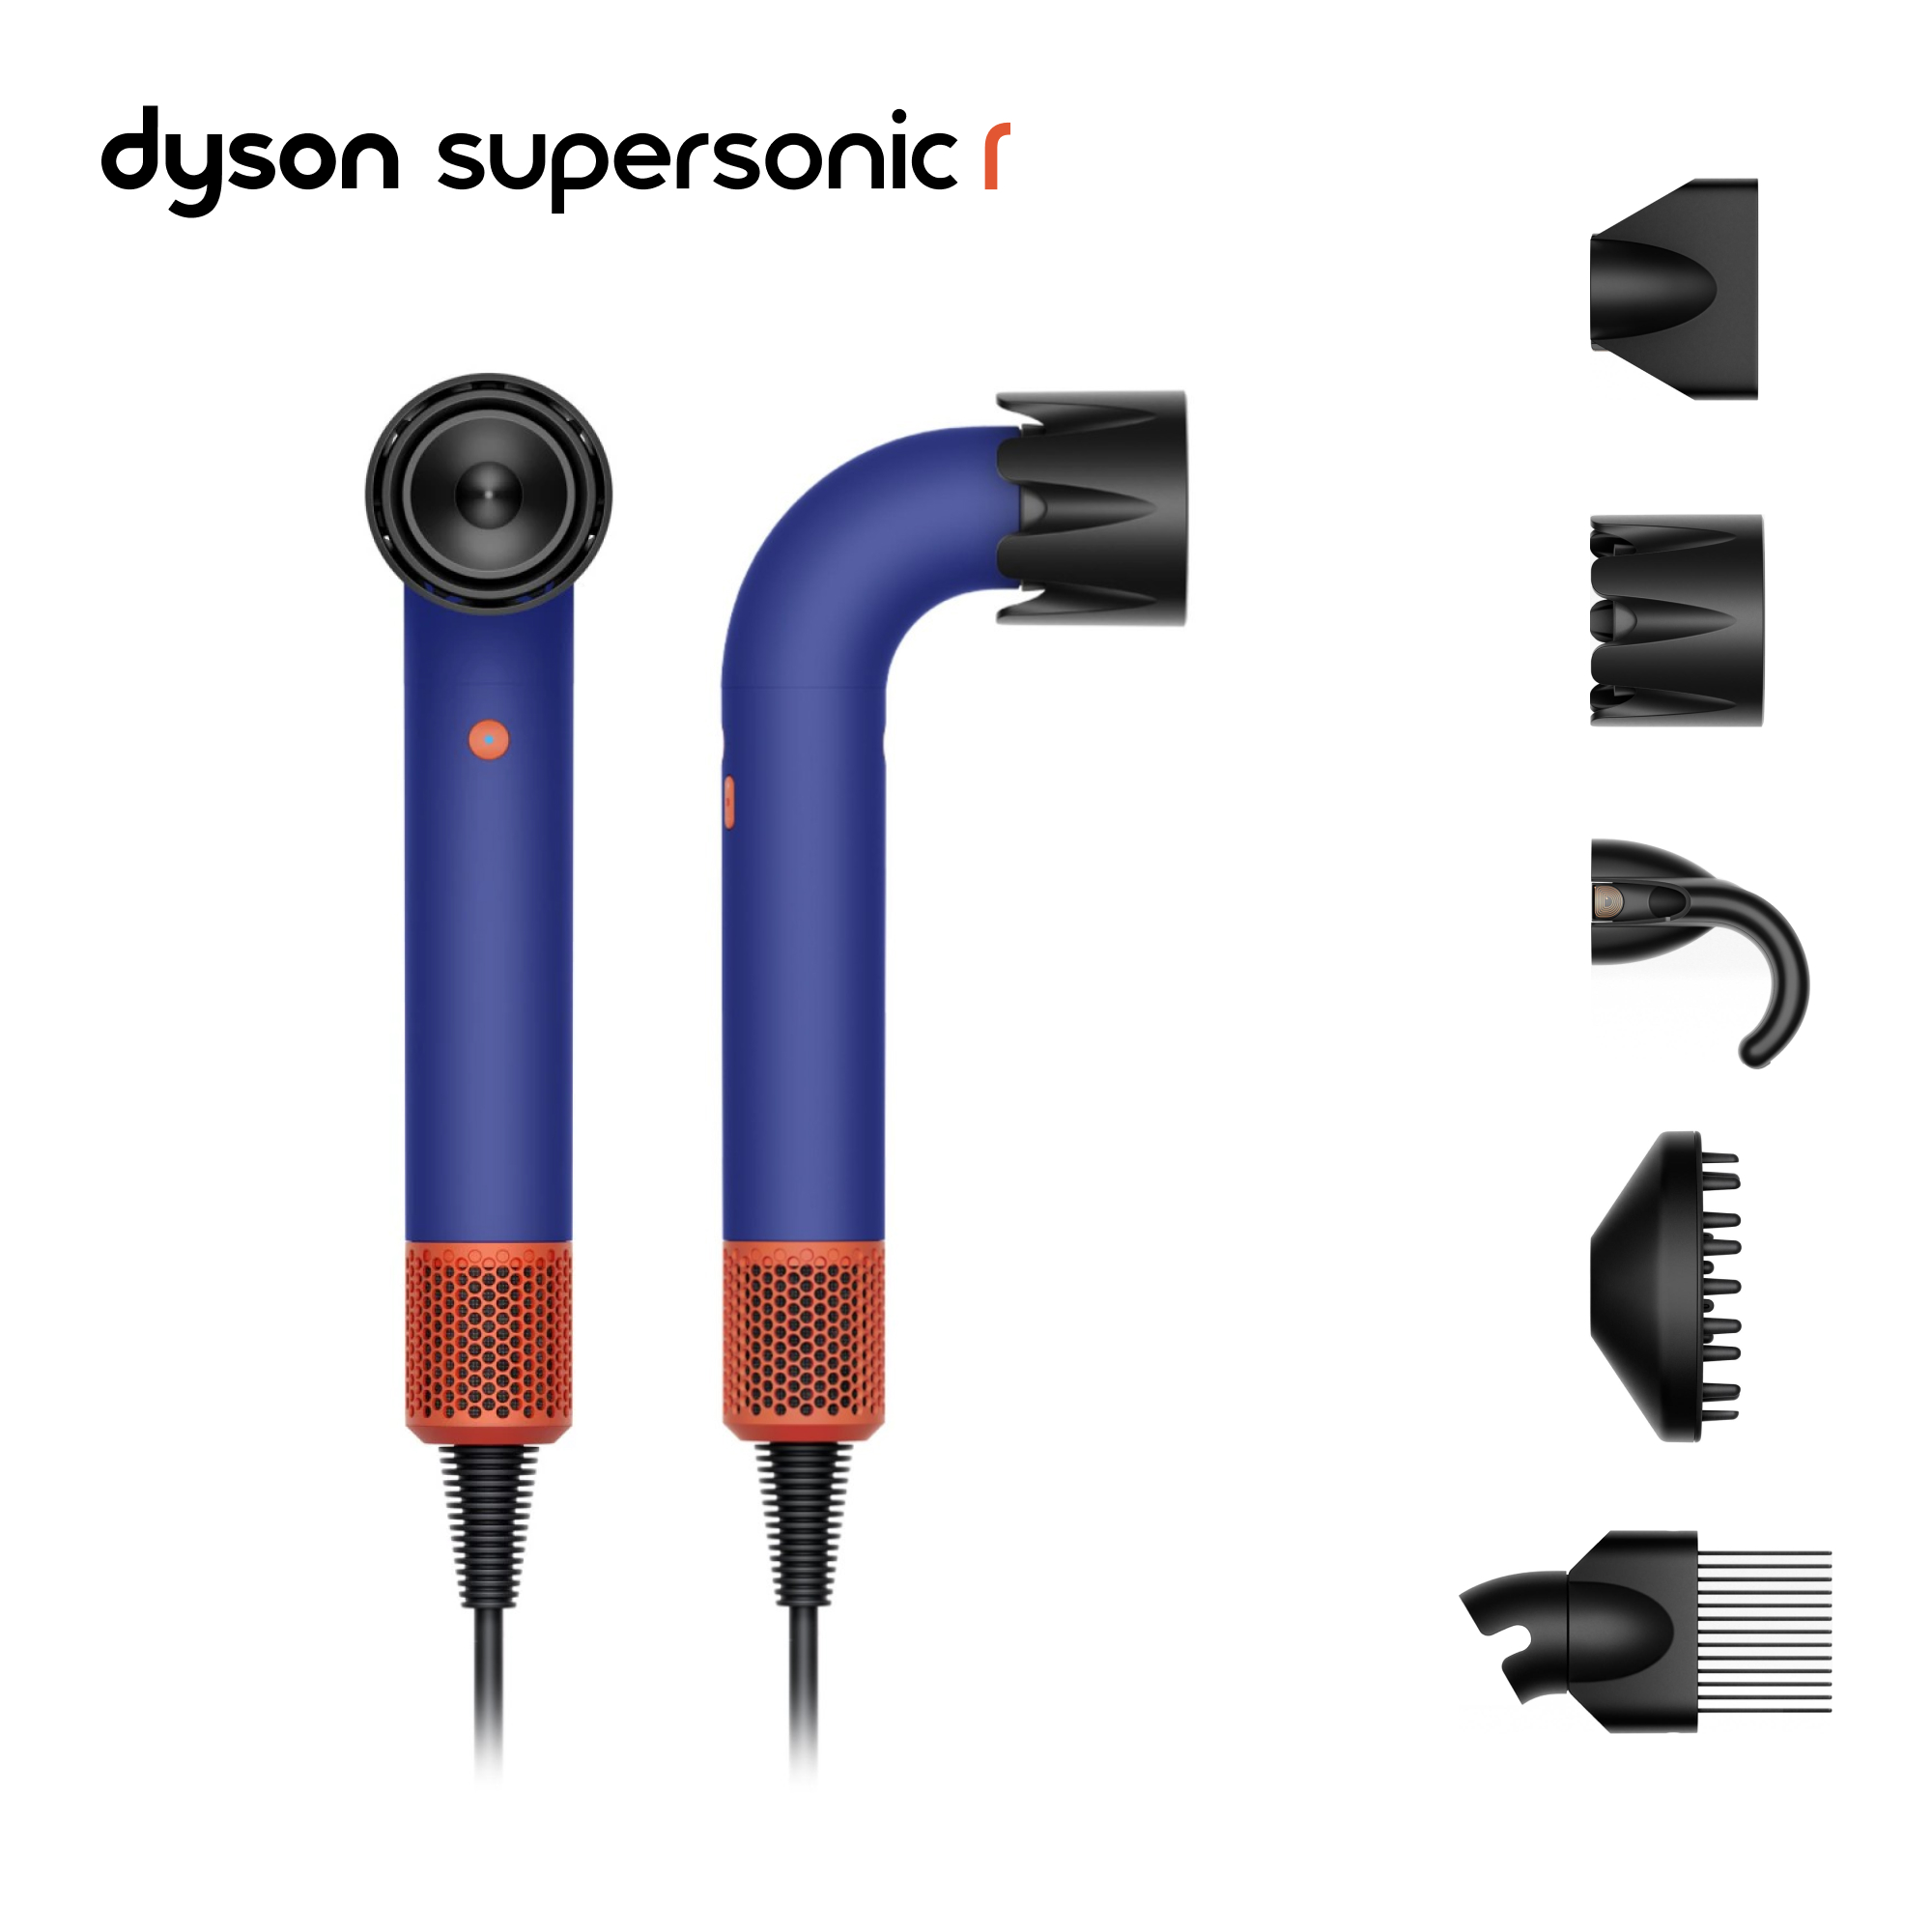 Фен Dyson Supersonic r HD18 Professional 1700 Вт синий, купить в Москве, цены в интернет-магазинах на Мегамаркет